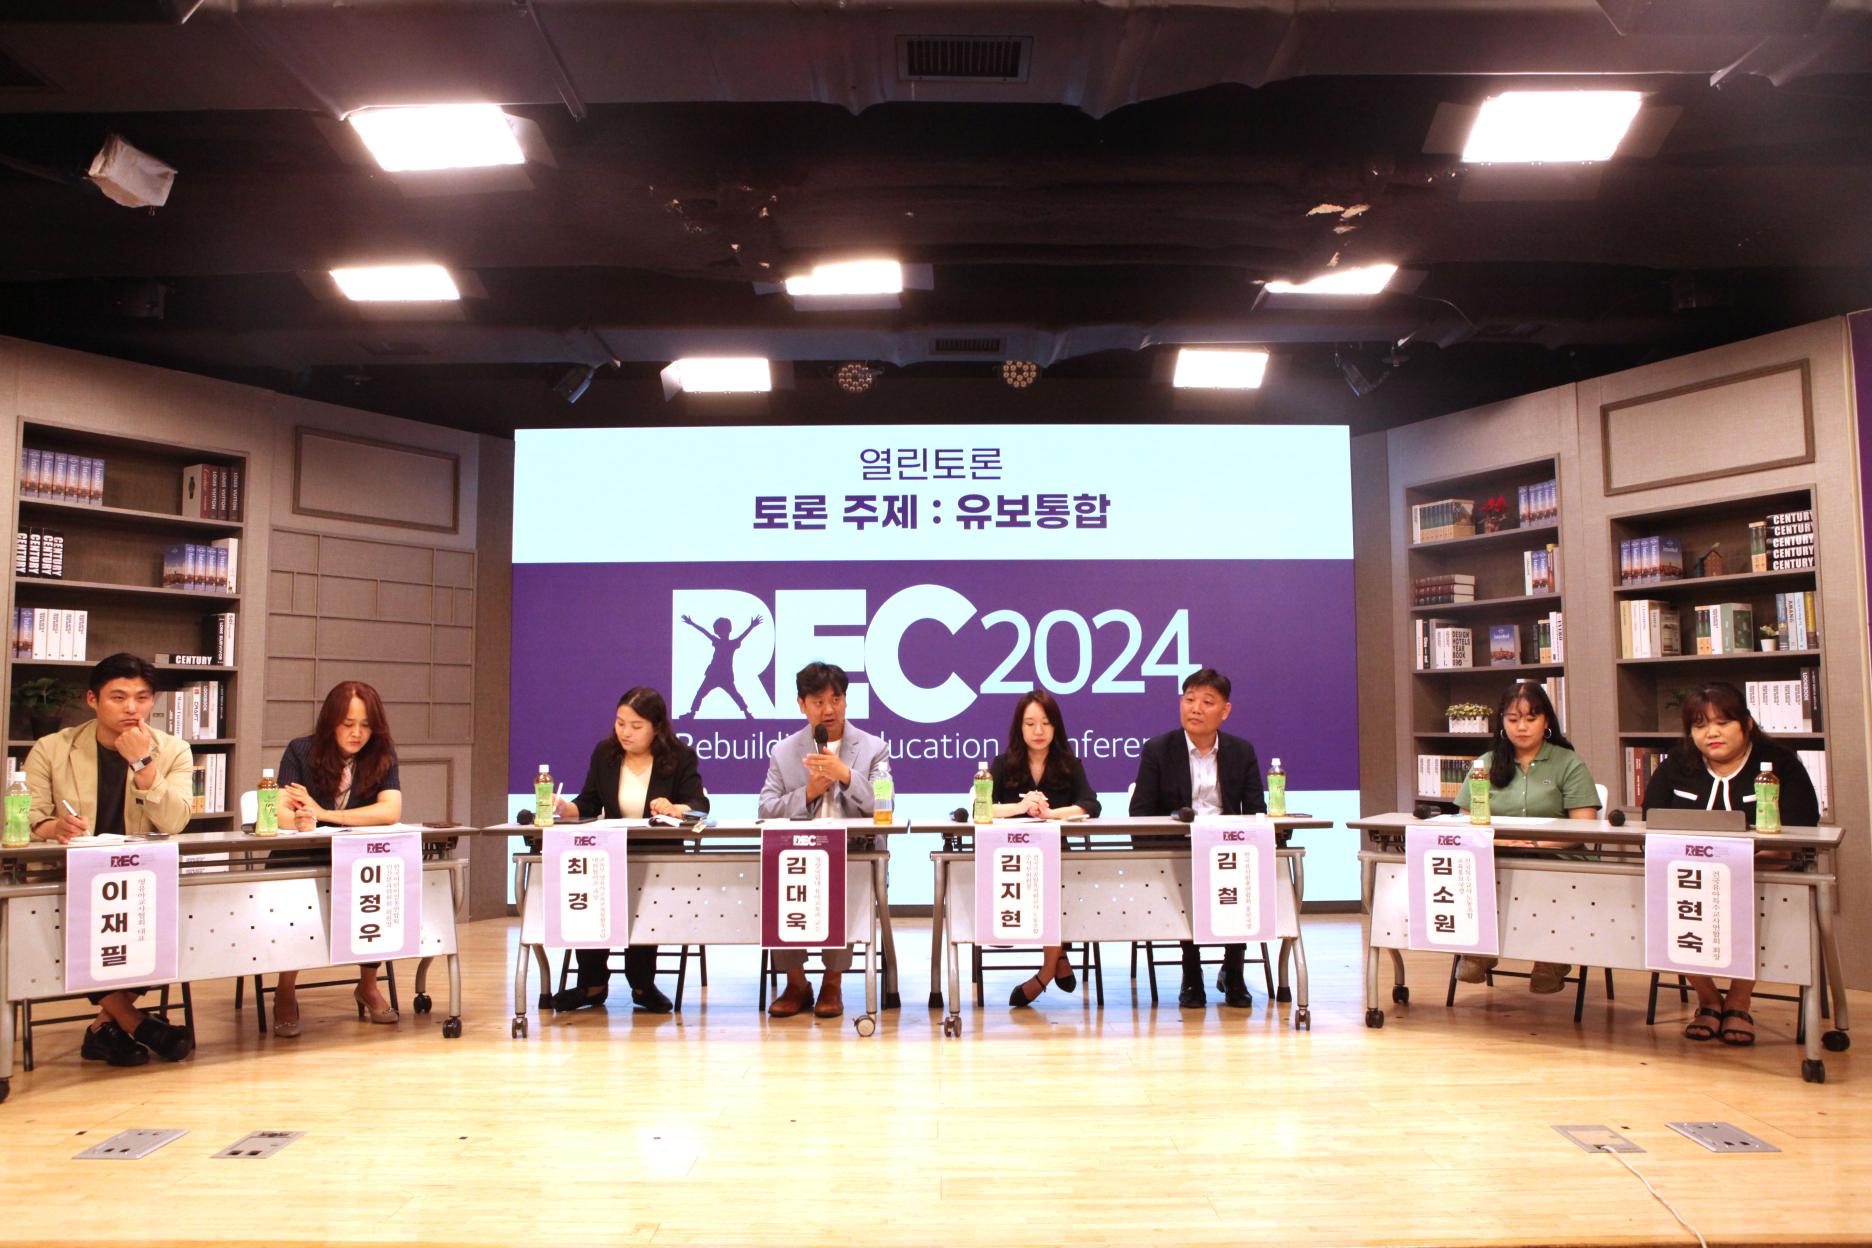 지난 6월 15일, 위즈경제·테크월드뉴스 등의 공동주최로 'REC 2024'가 개최되었다. 마지막 세션에서 개최된 토론회에는 영유아 교육·보육 관련 각 단체의 전문가가 자리를 함께 했다. (출처 = 위즈경제)